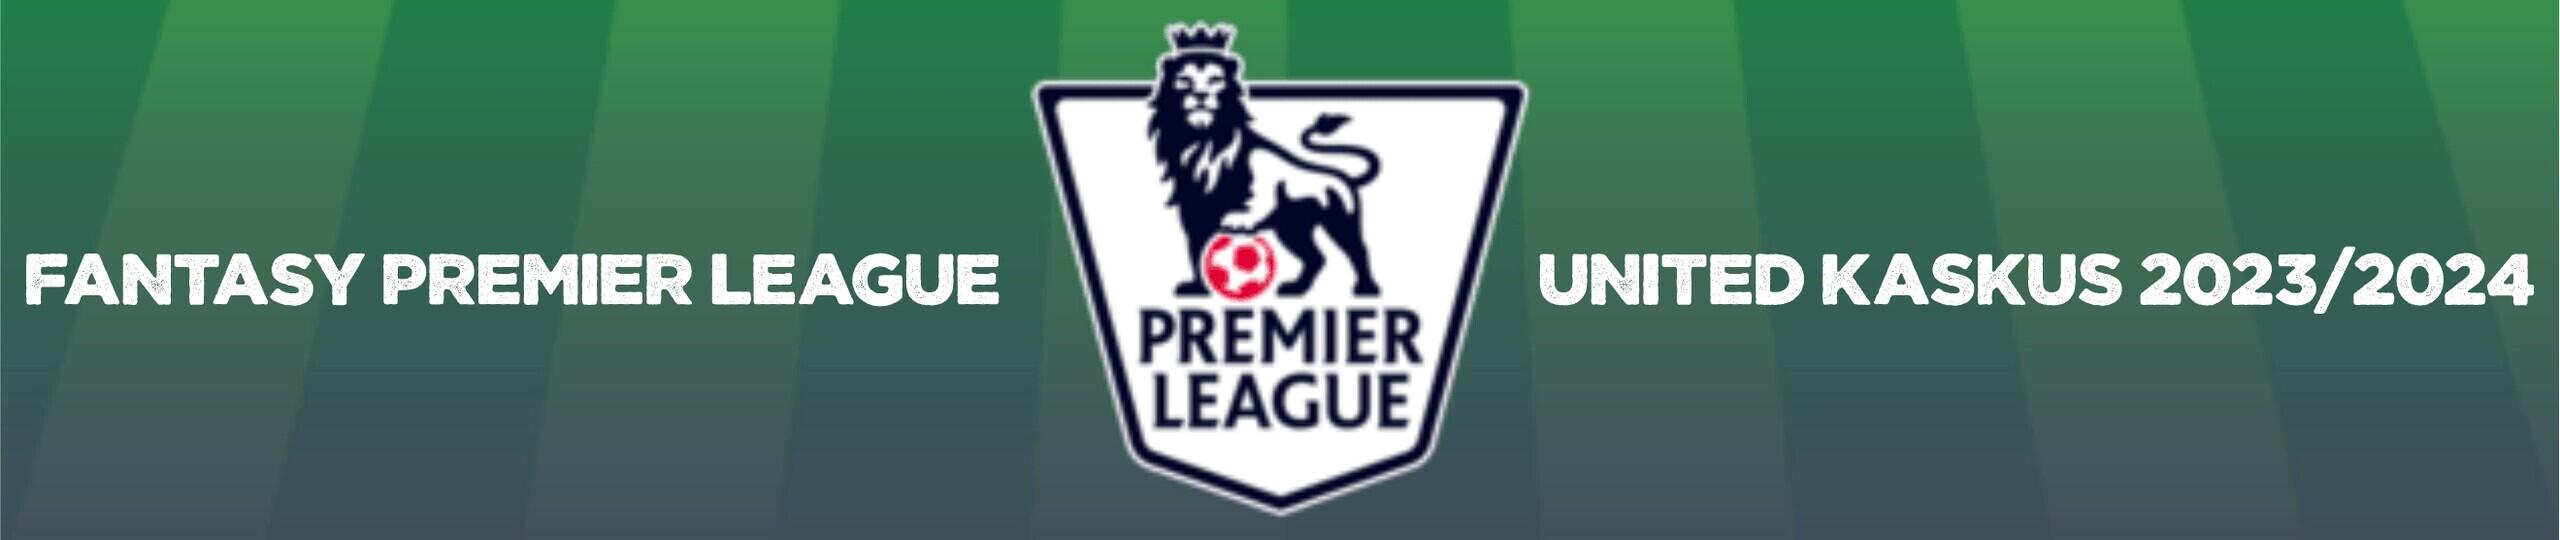 Fantasy Premier League (FPL) 2023/2024 - United Kaskus 